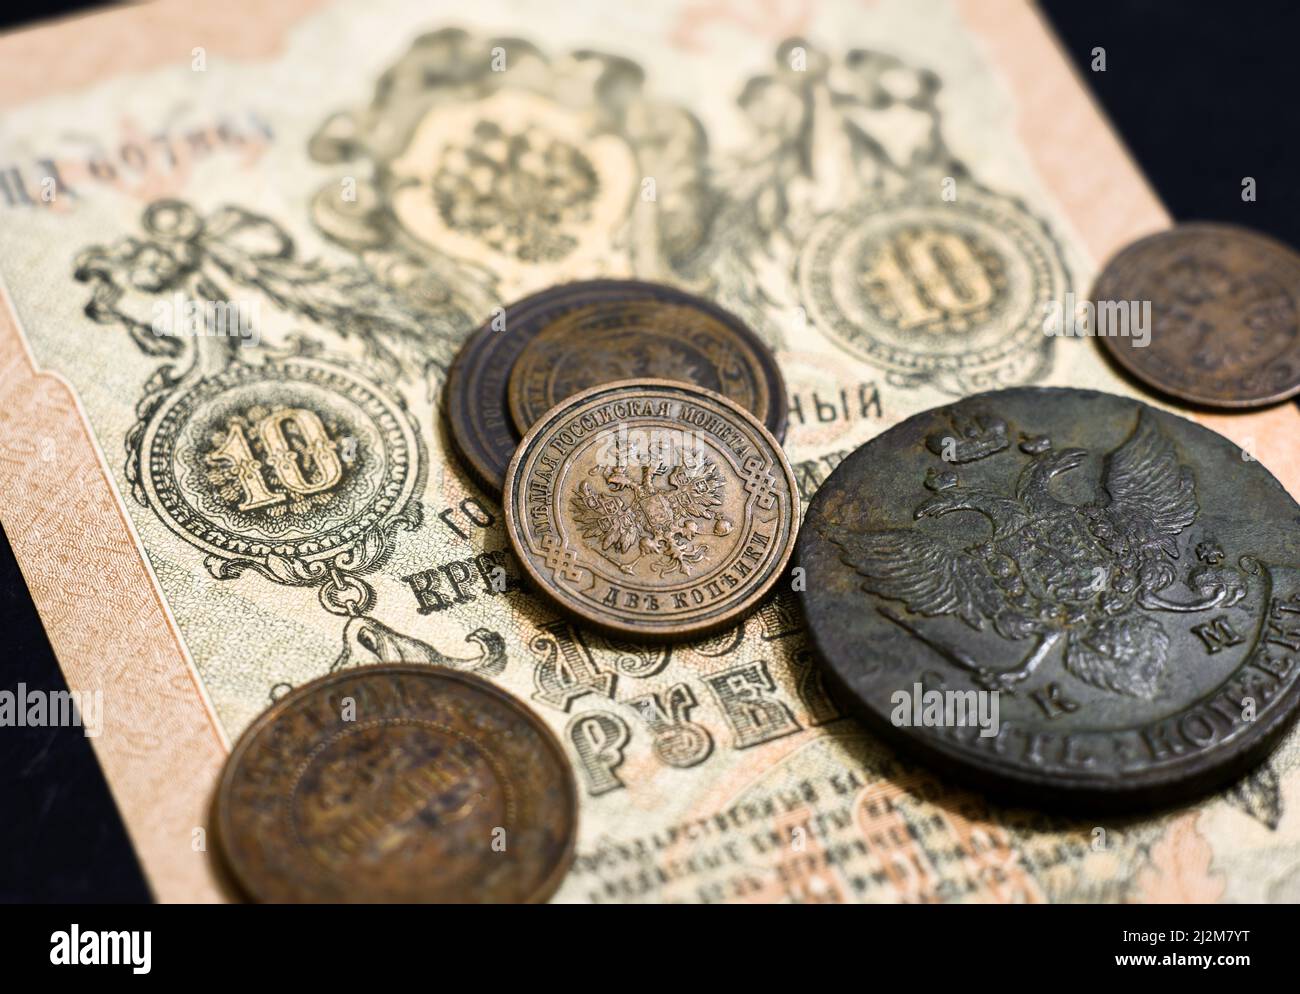 Denaro dell'Impero Russo, vecchie monete e banconote. Monete di rame antico e moneta di carta con stemma imperiale della Russia. Concetto di storia, vin Foto Stock